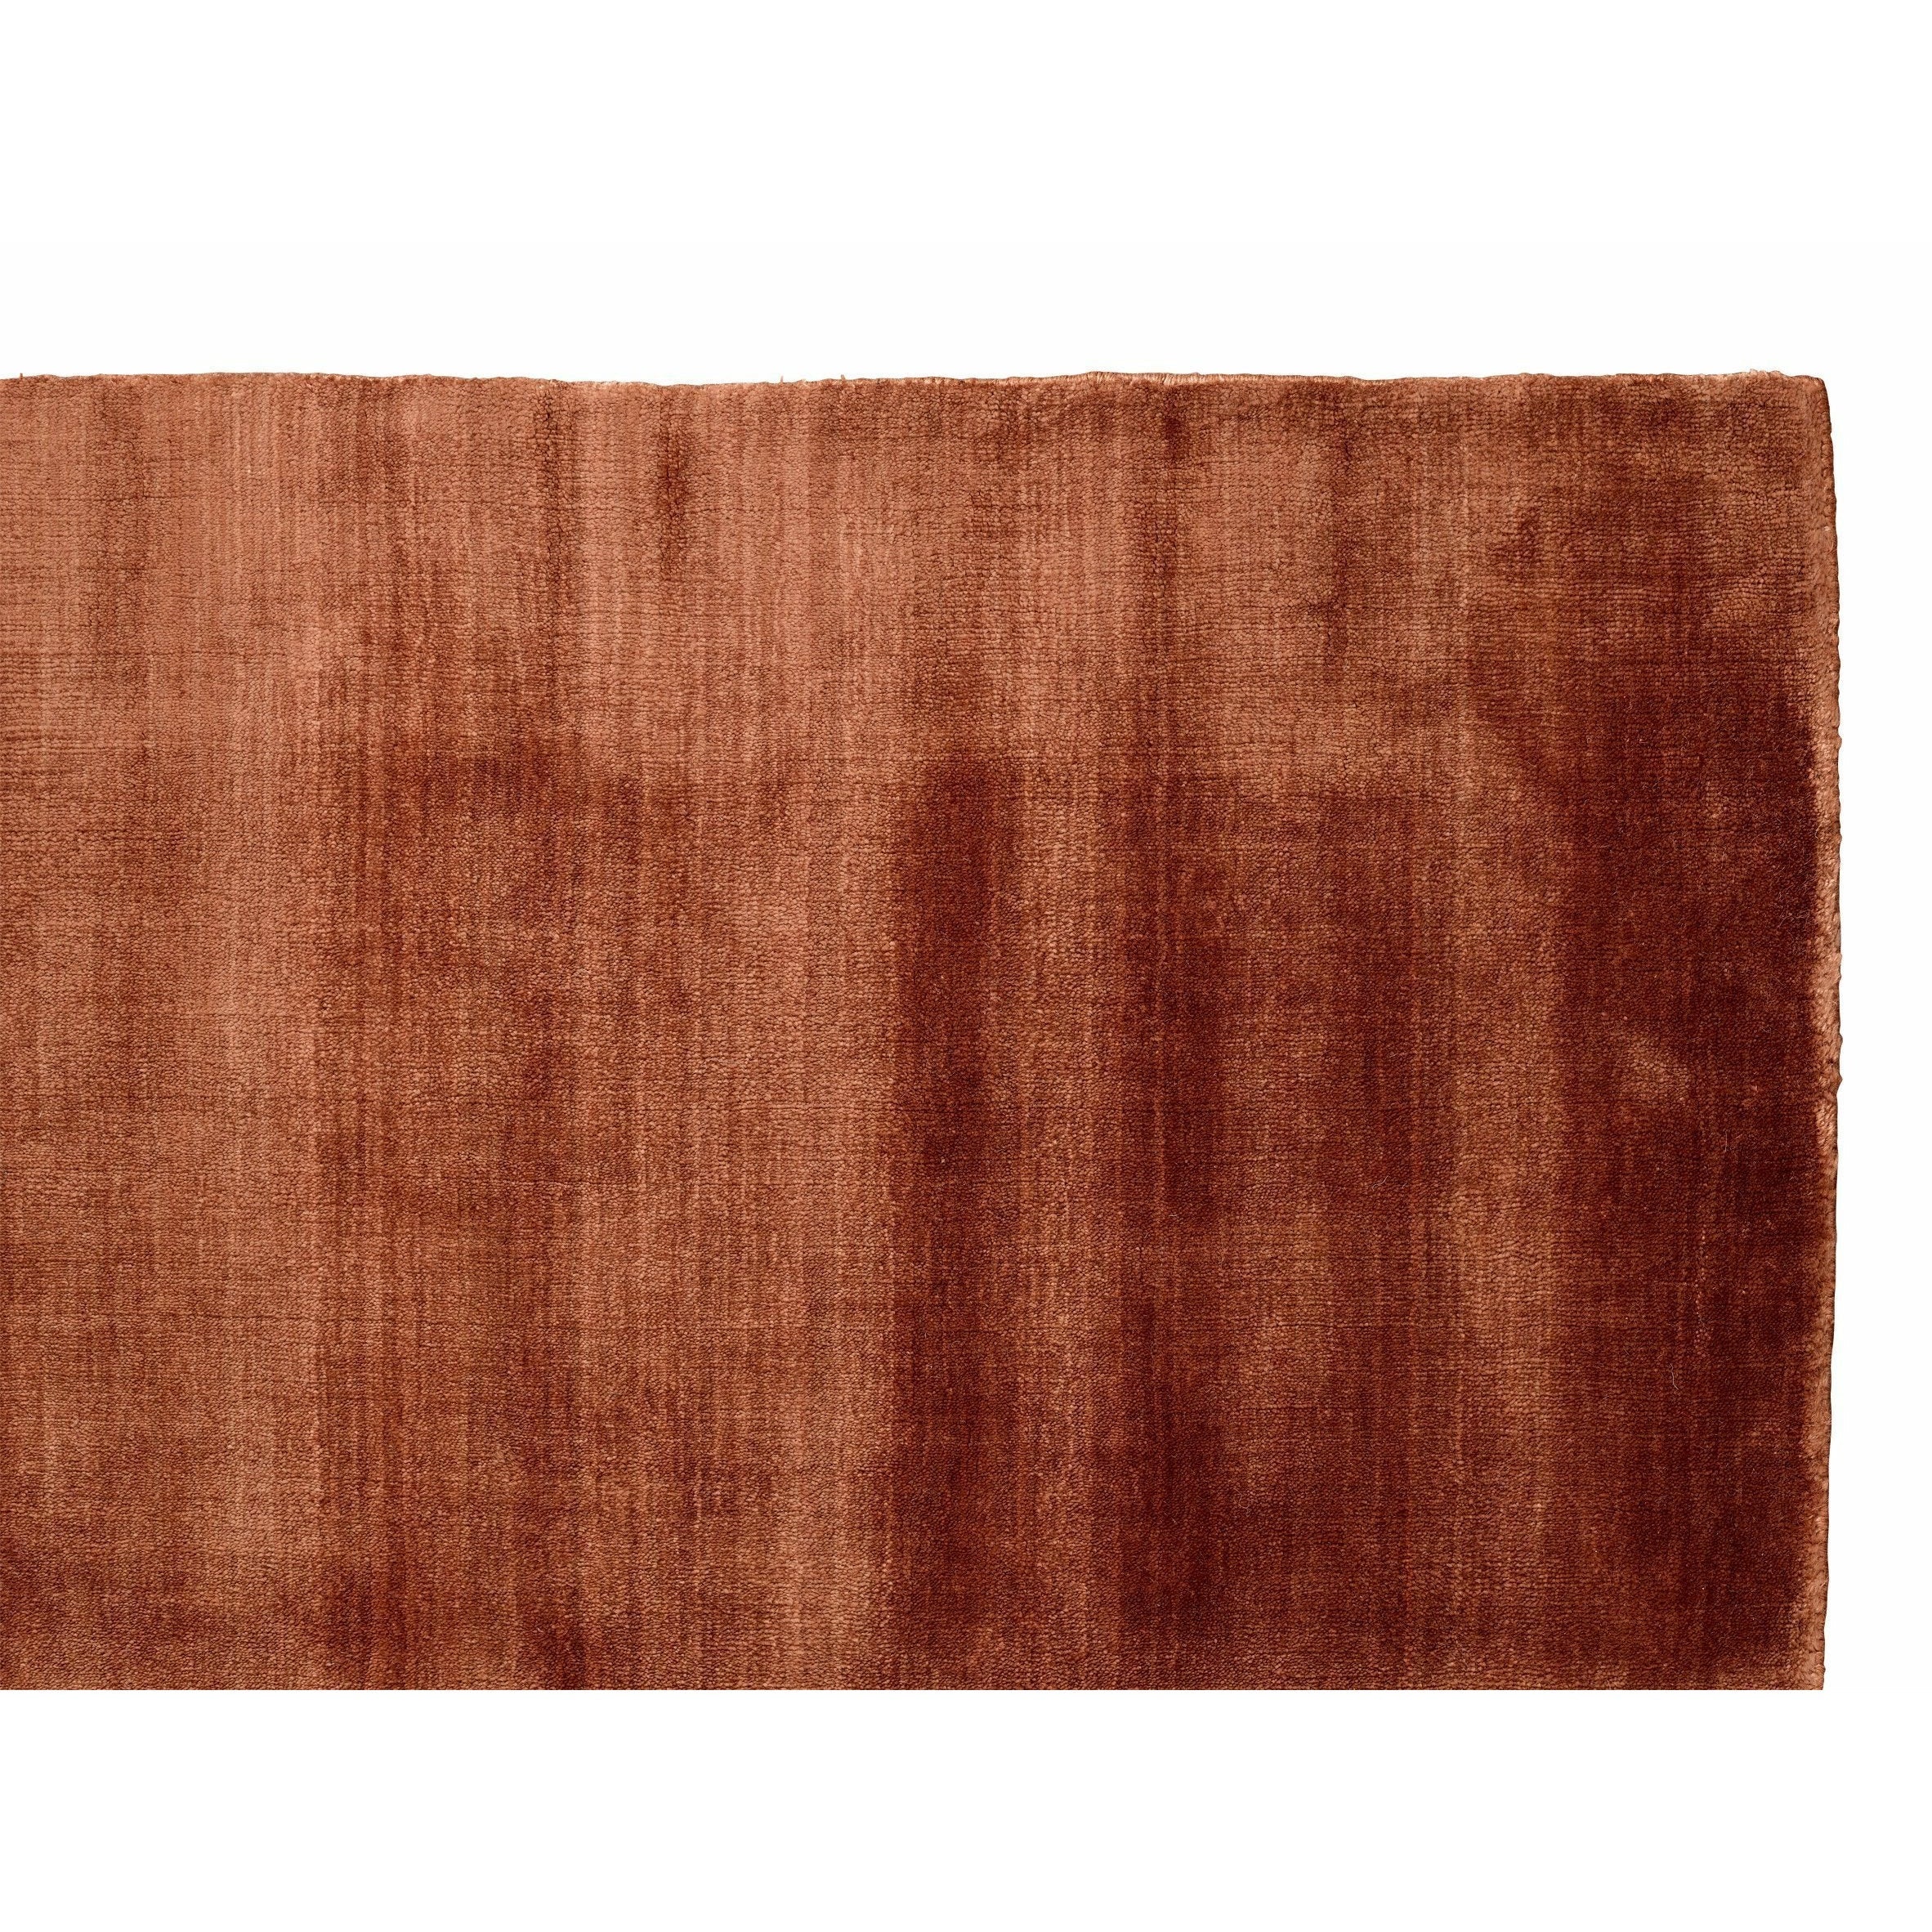 Massimo Bambus Teppich Kupfer, 170x240 cm